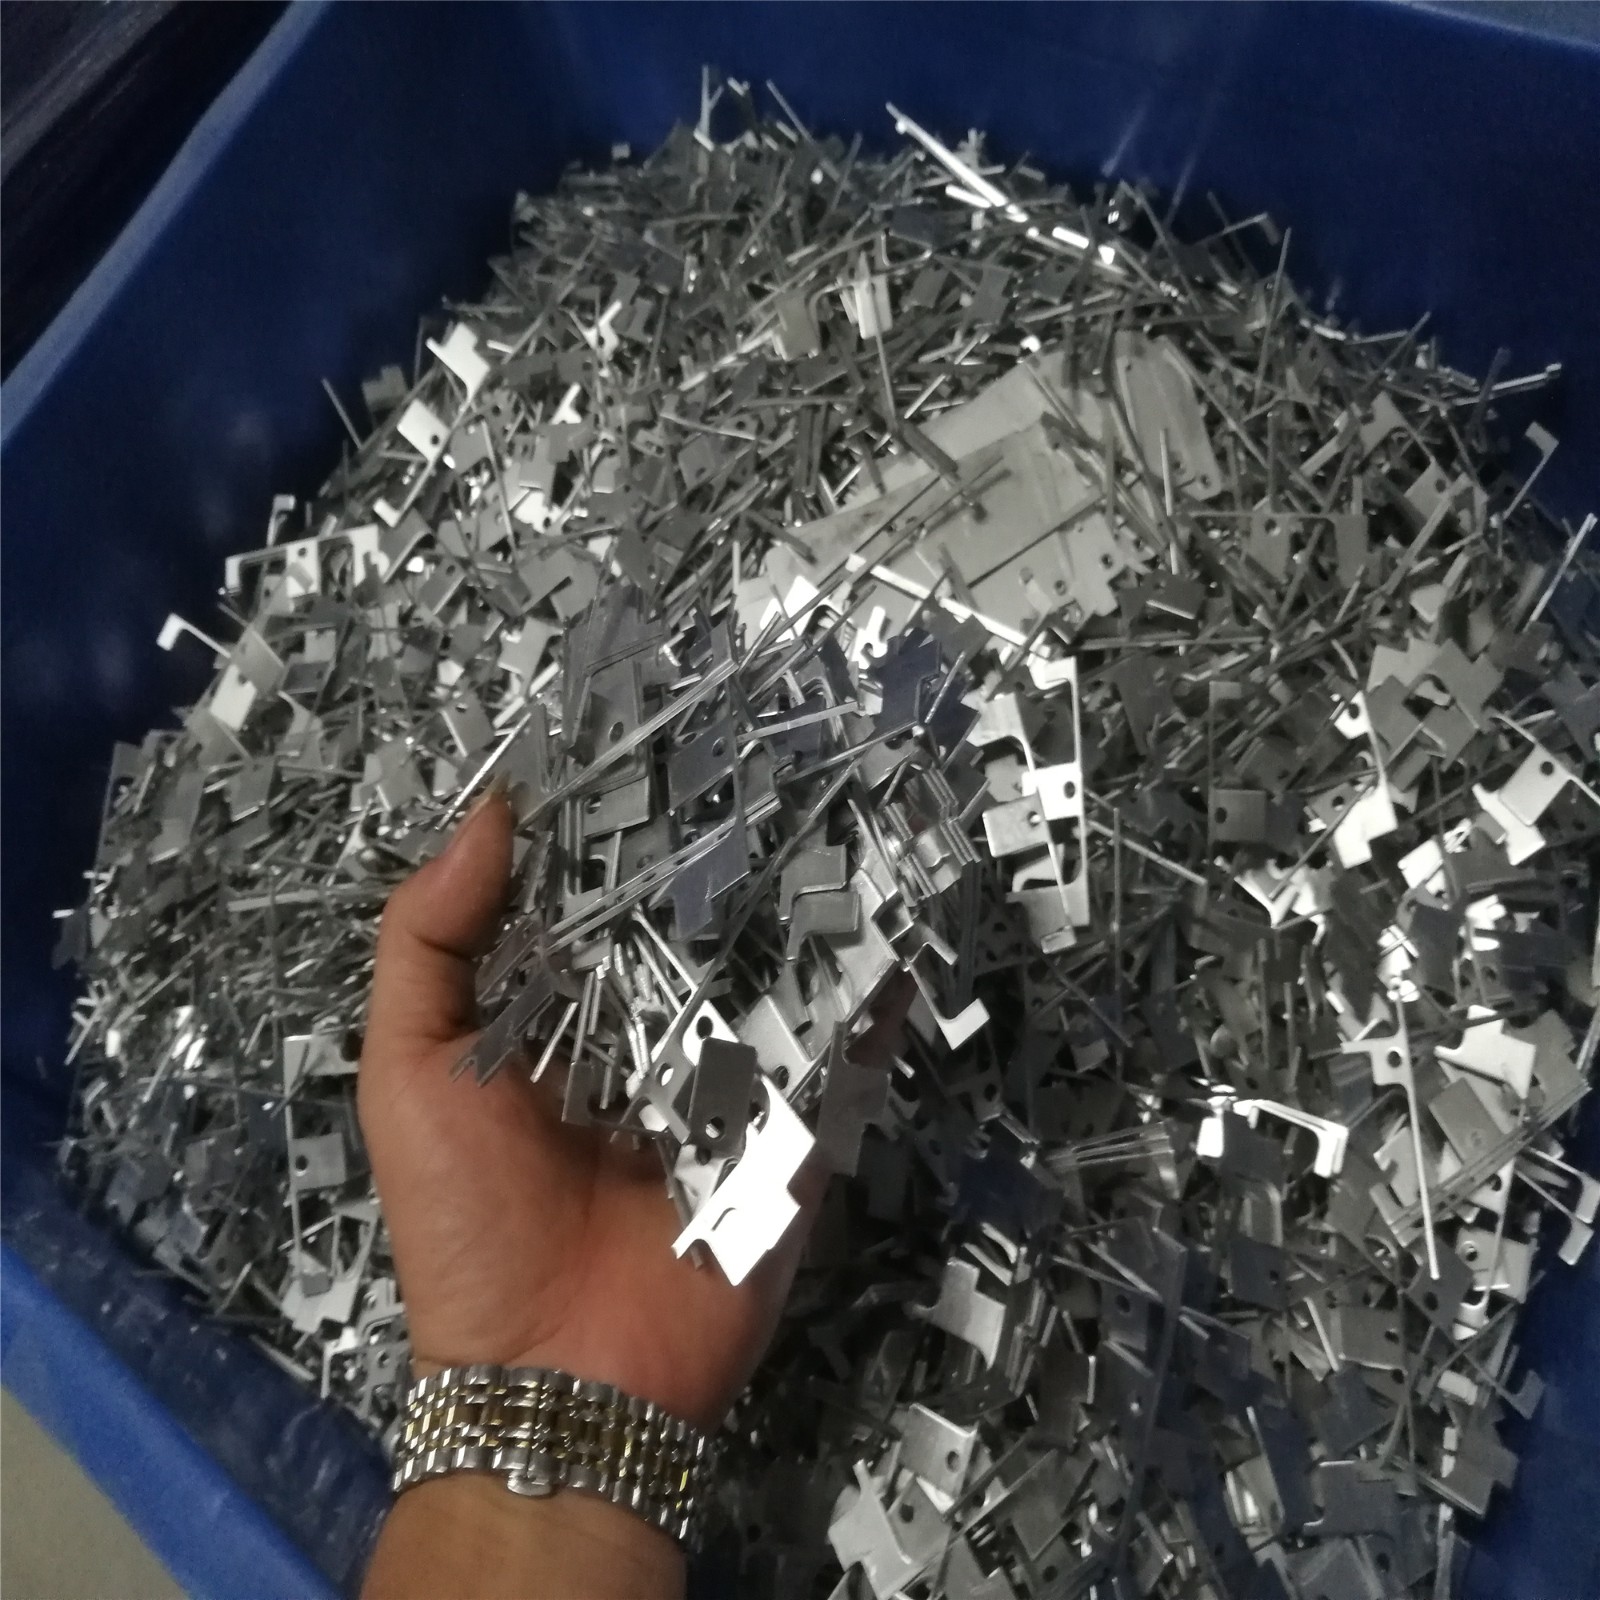 废铝回收 铝块回收铝边料回收铝合金回收铝削回收铝刨丝回收铝渣回收废铝回收价格 珠三角地区快速上门回收